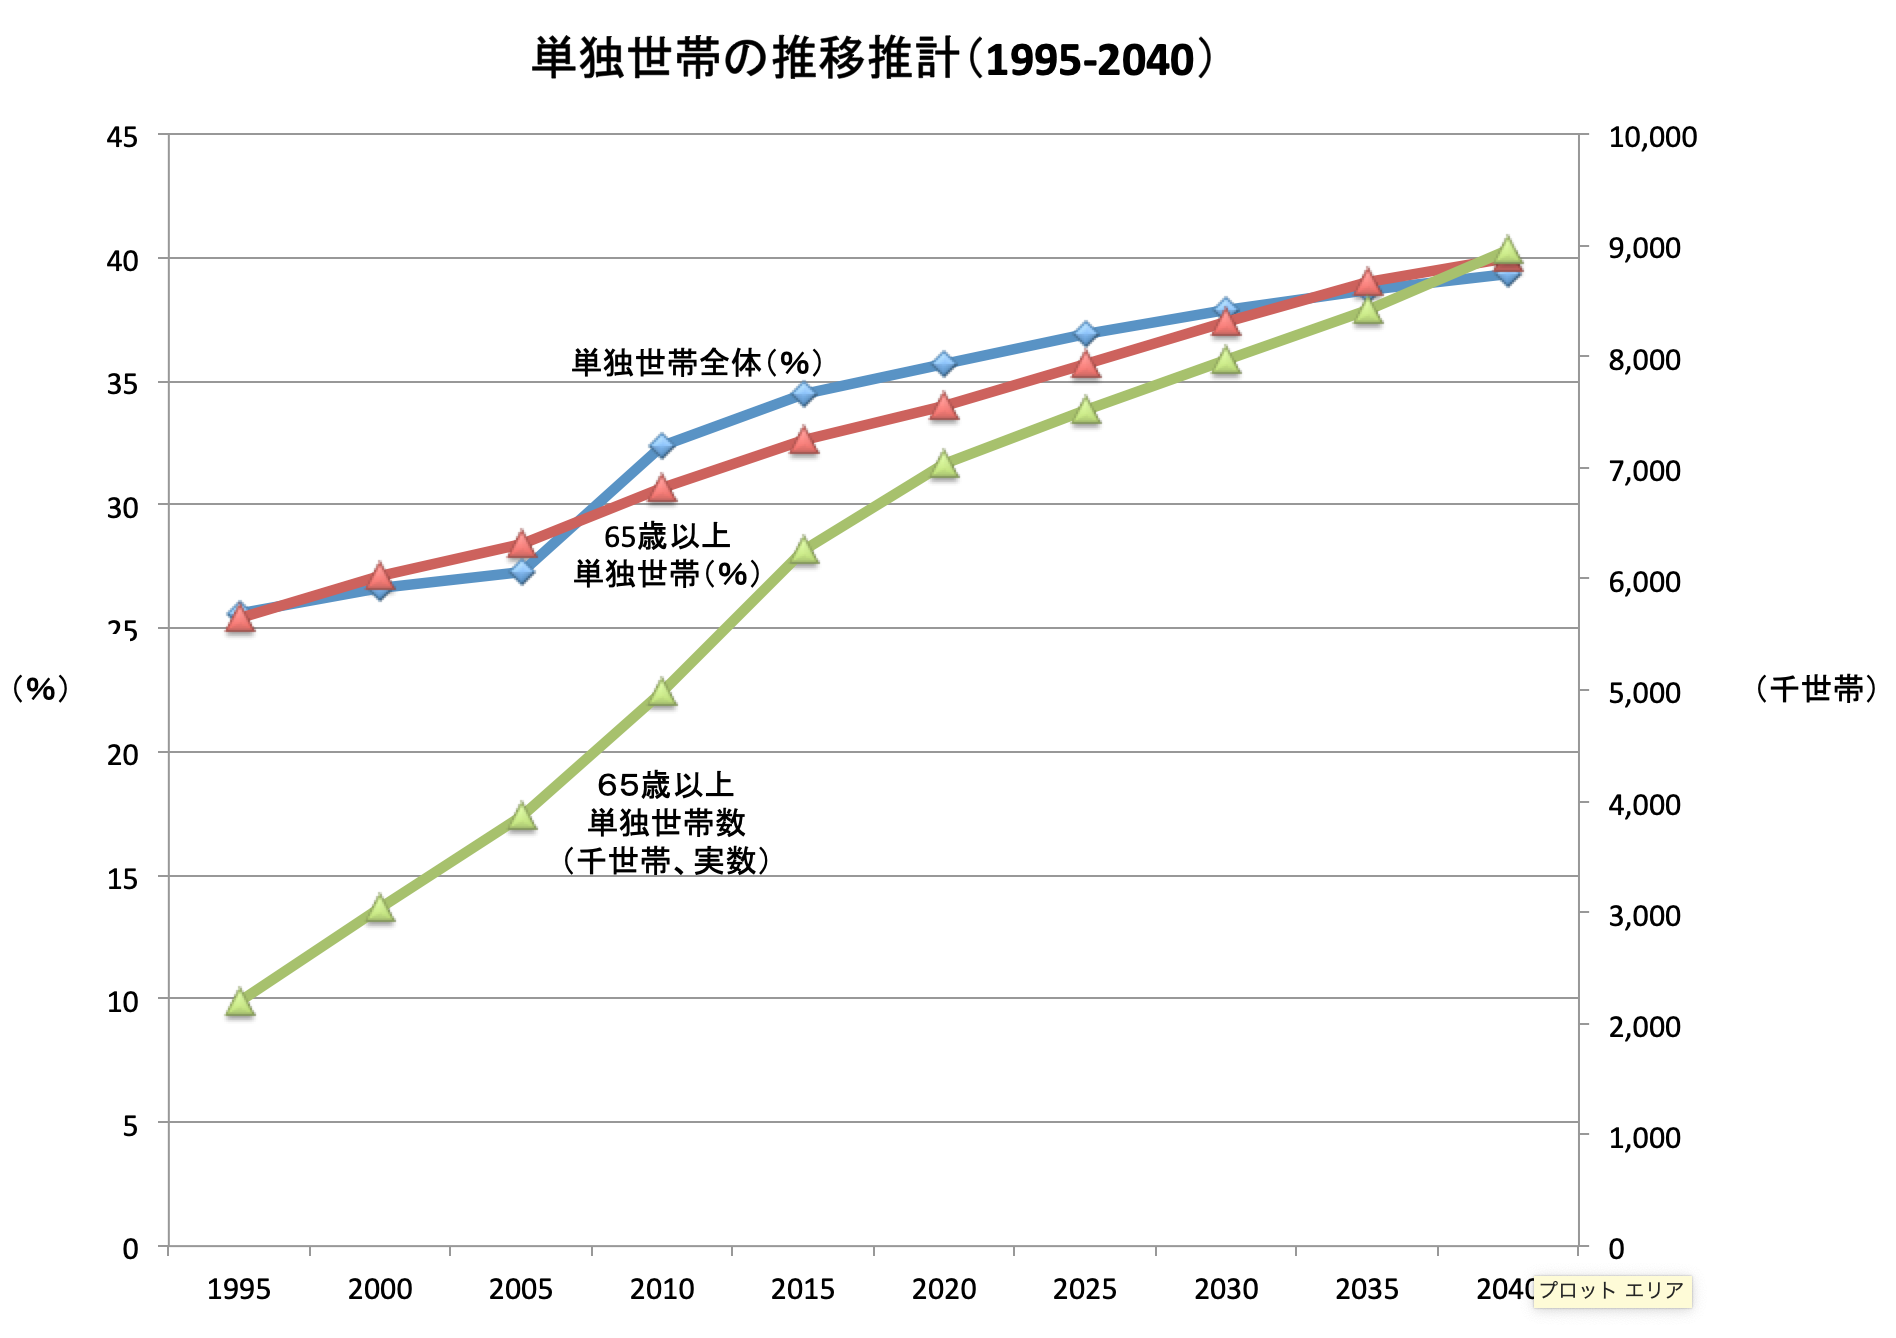 （出典）2015年-2040年まで総務省統計局「国勢調査」2020年以降は国立社会保障・人口問題研究所「日本の世帯数の将来推計（全国推計）2018（平成30）年推計」（2018）、1995年−2010年までは1998年の調査より作成